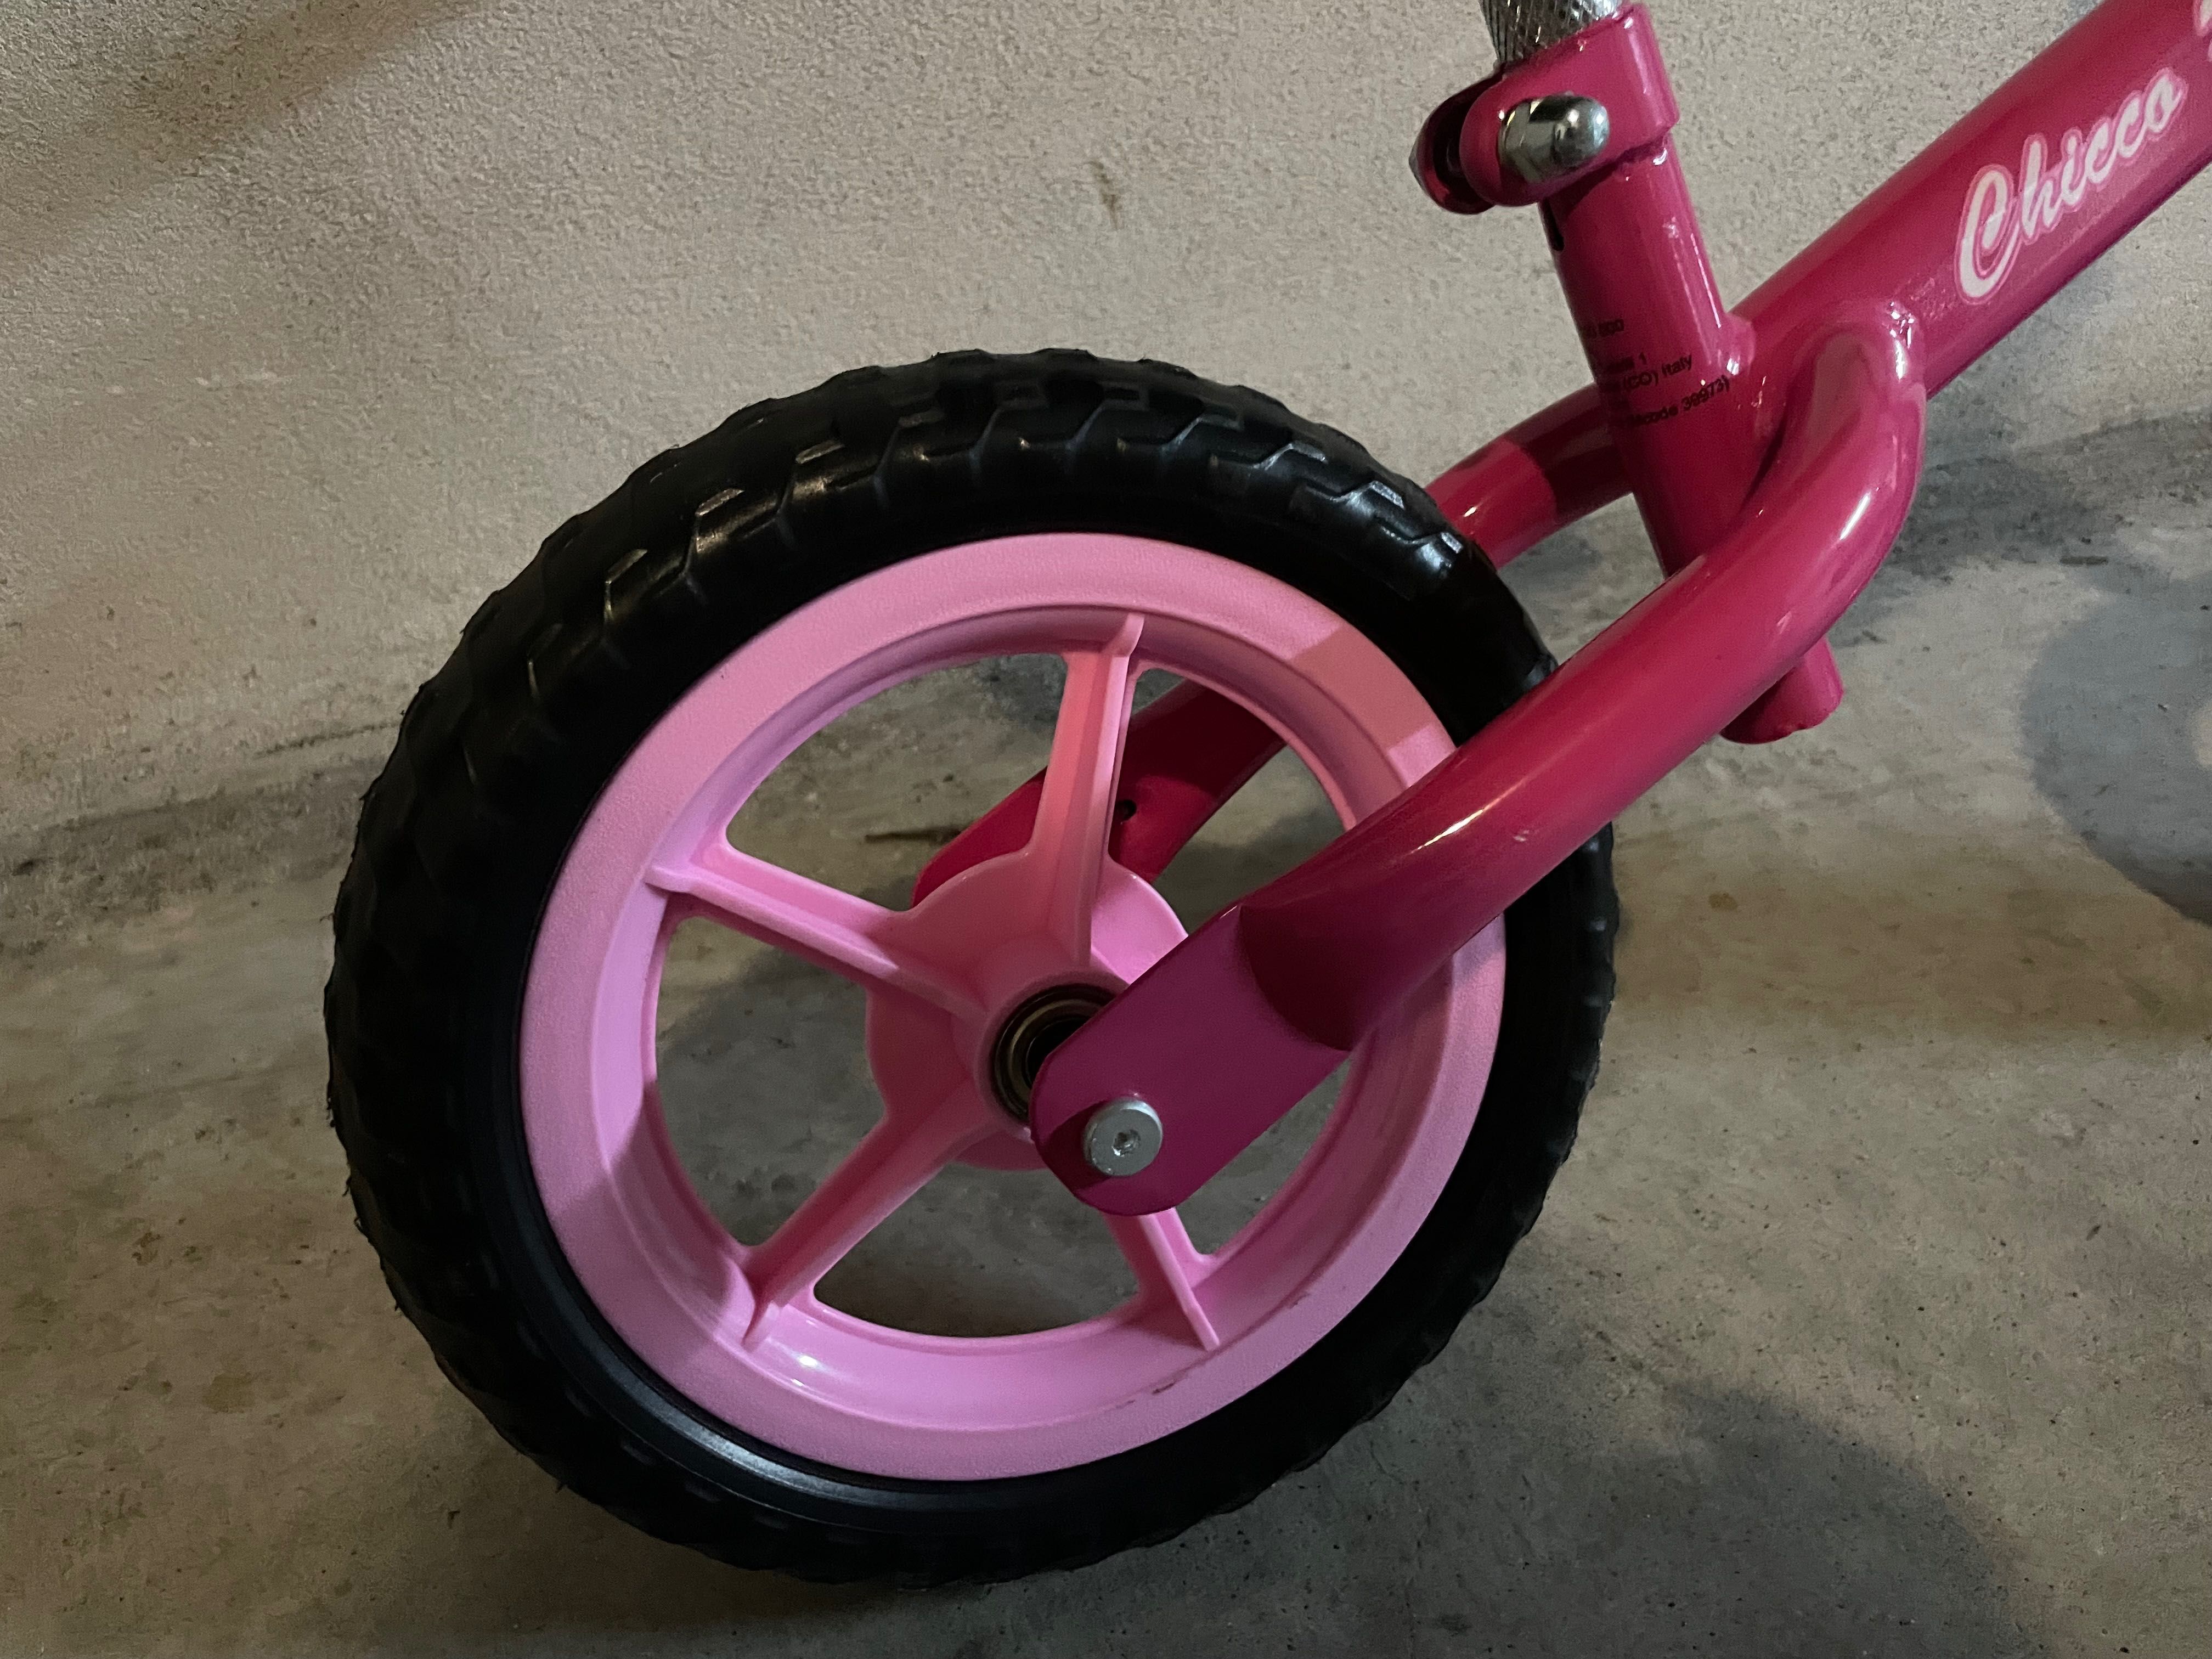 Bicicleta Criança Rosa Sem Pedais Chicco